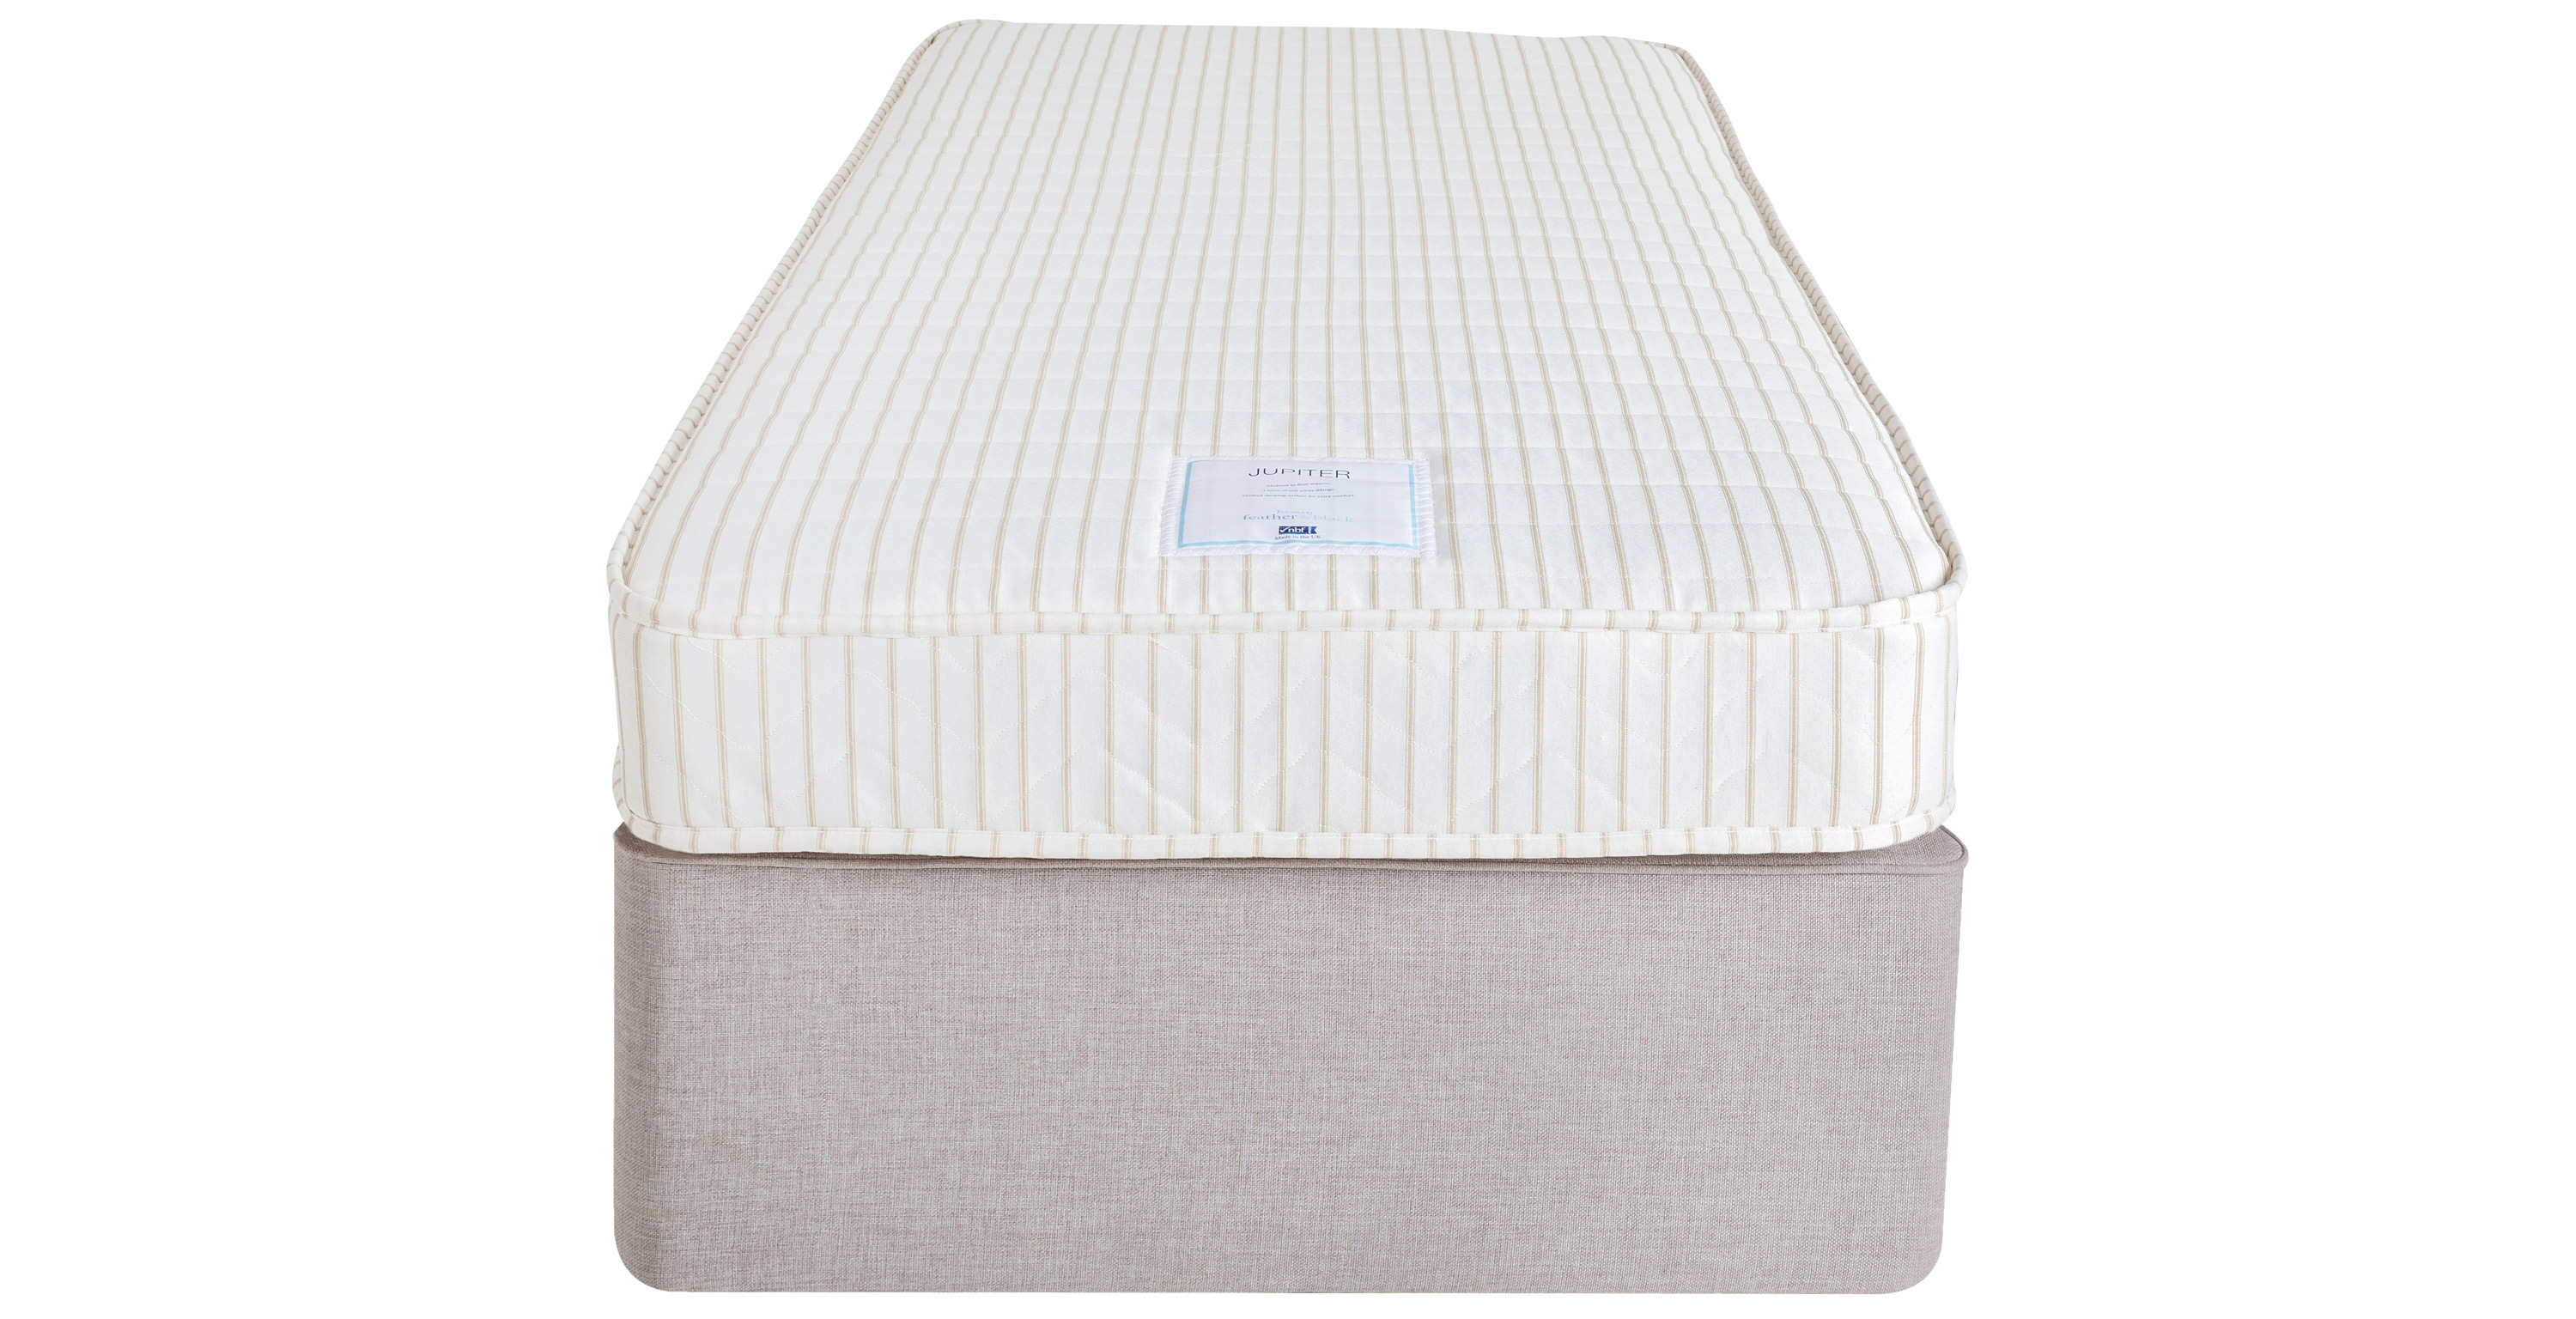 jupiter thermo cool crib mattress protector